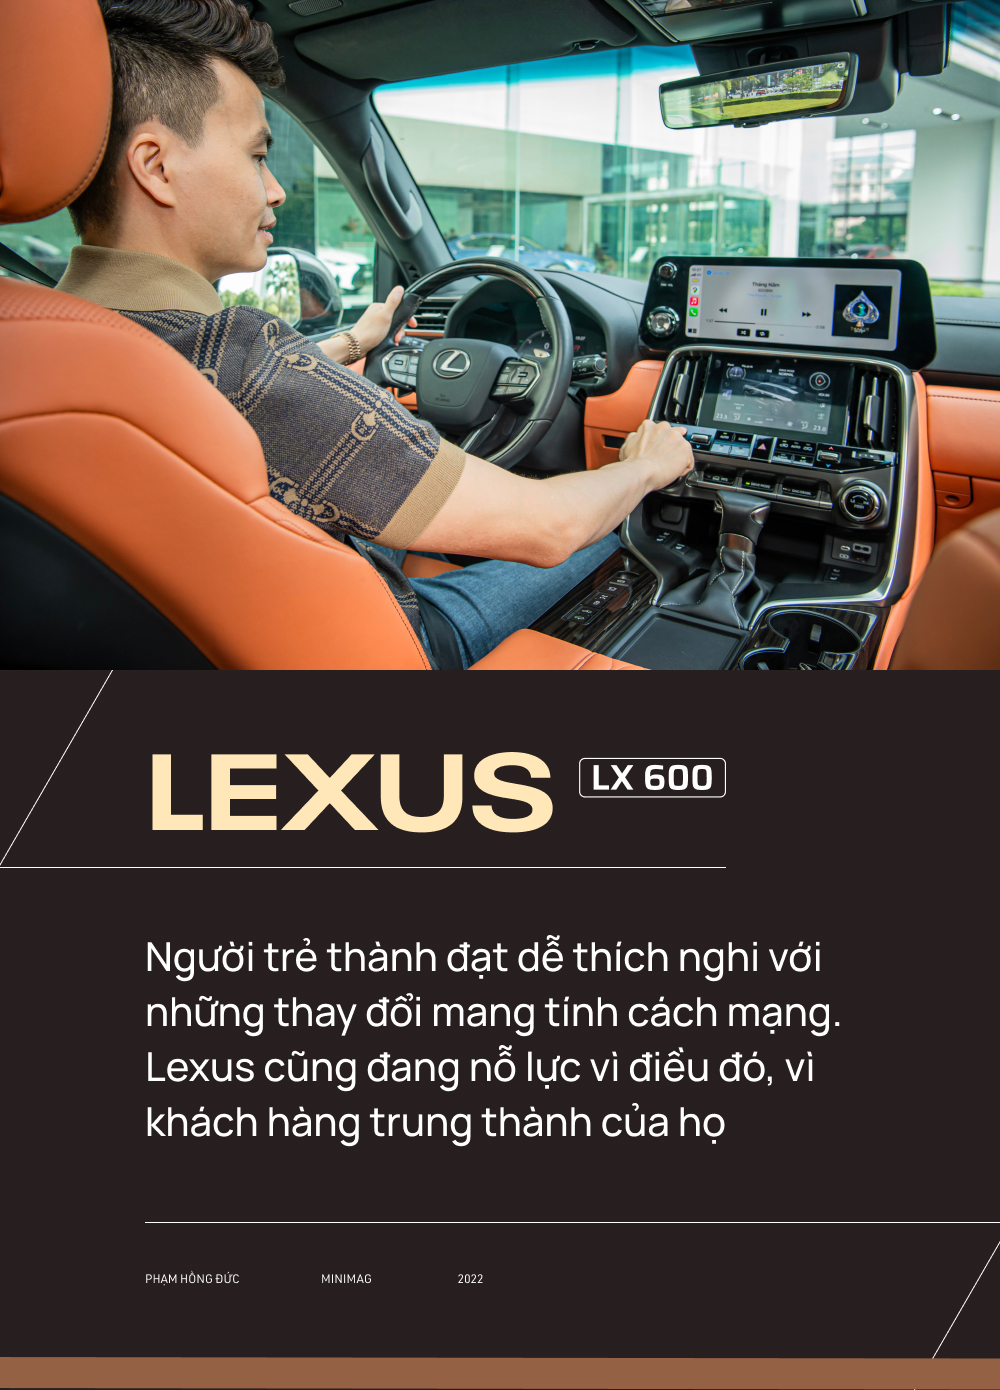 Từ Innova qua 3 đời Lexus, bác sĩ 8X chọn tiếp LX 600: ‘Dùng Lexus rồi khó sang thương hiệu khác’ - Ảnh 16.